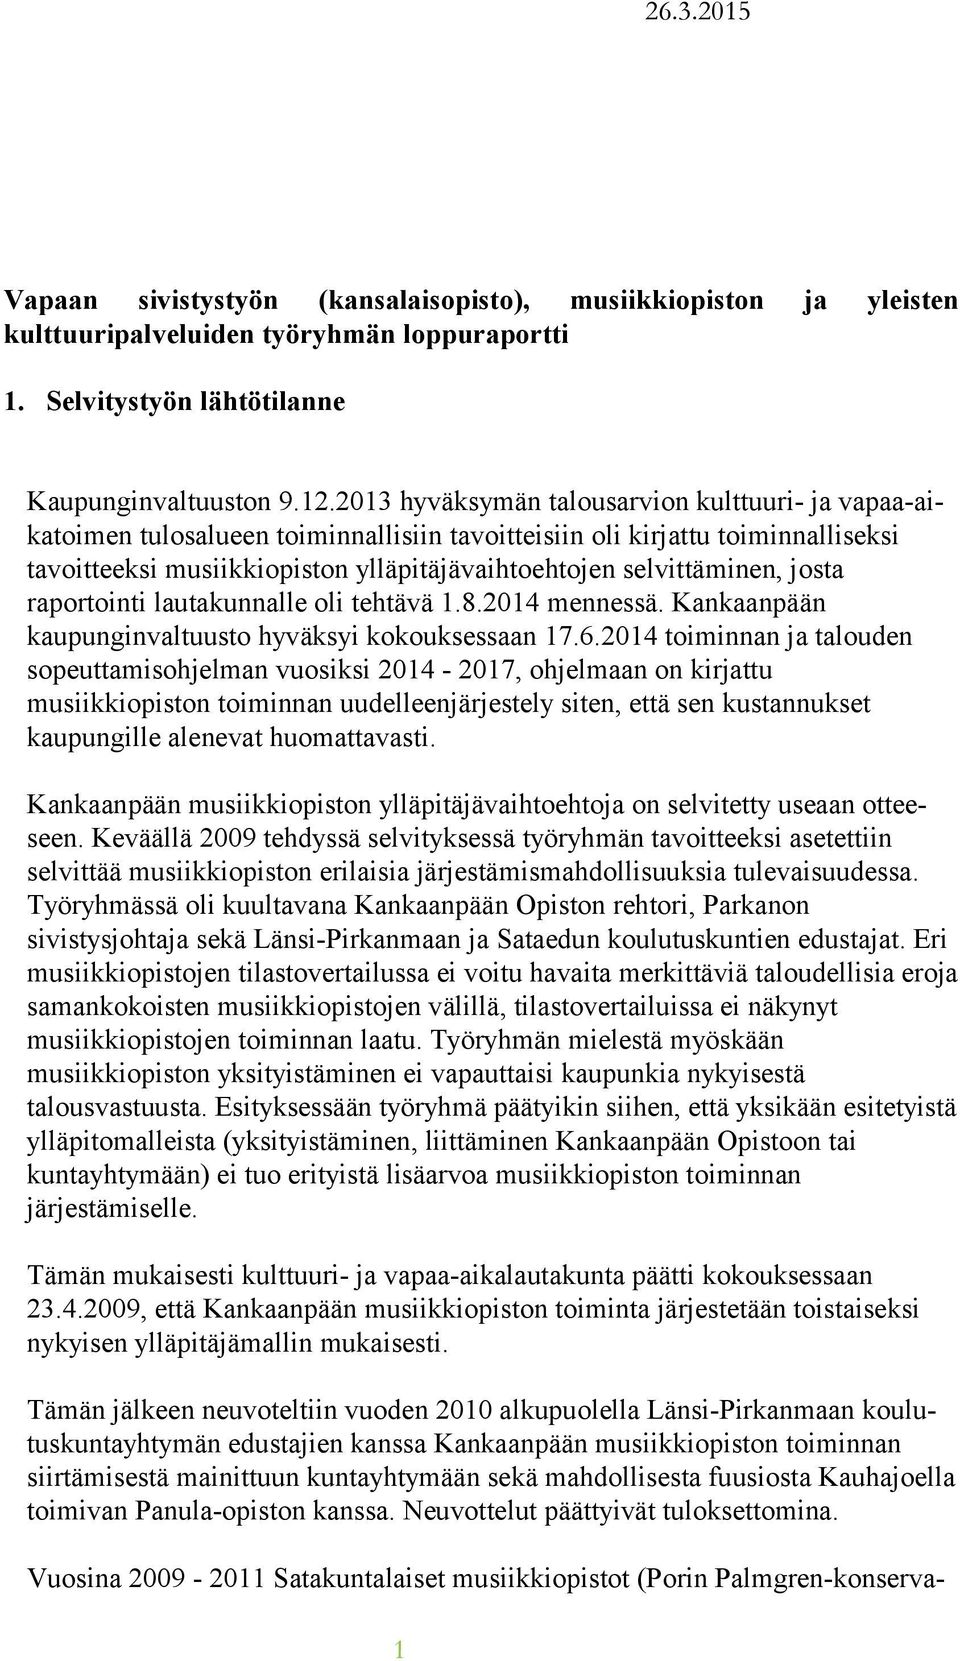 selvittäminen, josta raportointi lautakunnalle oli tehtävä 1.8.2014 men nes sä. Kankaanpään kaupunginvaltuusto hyväksyi ko kouk ses saan 17.6.